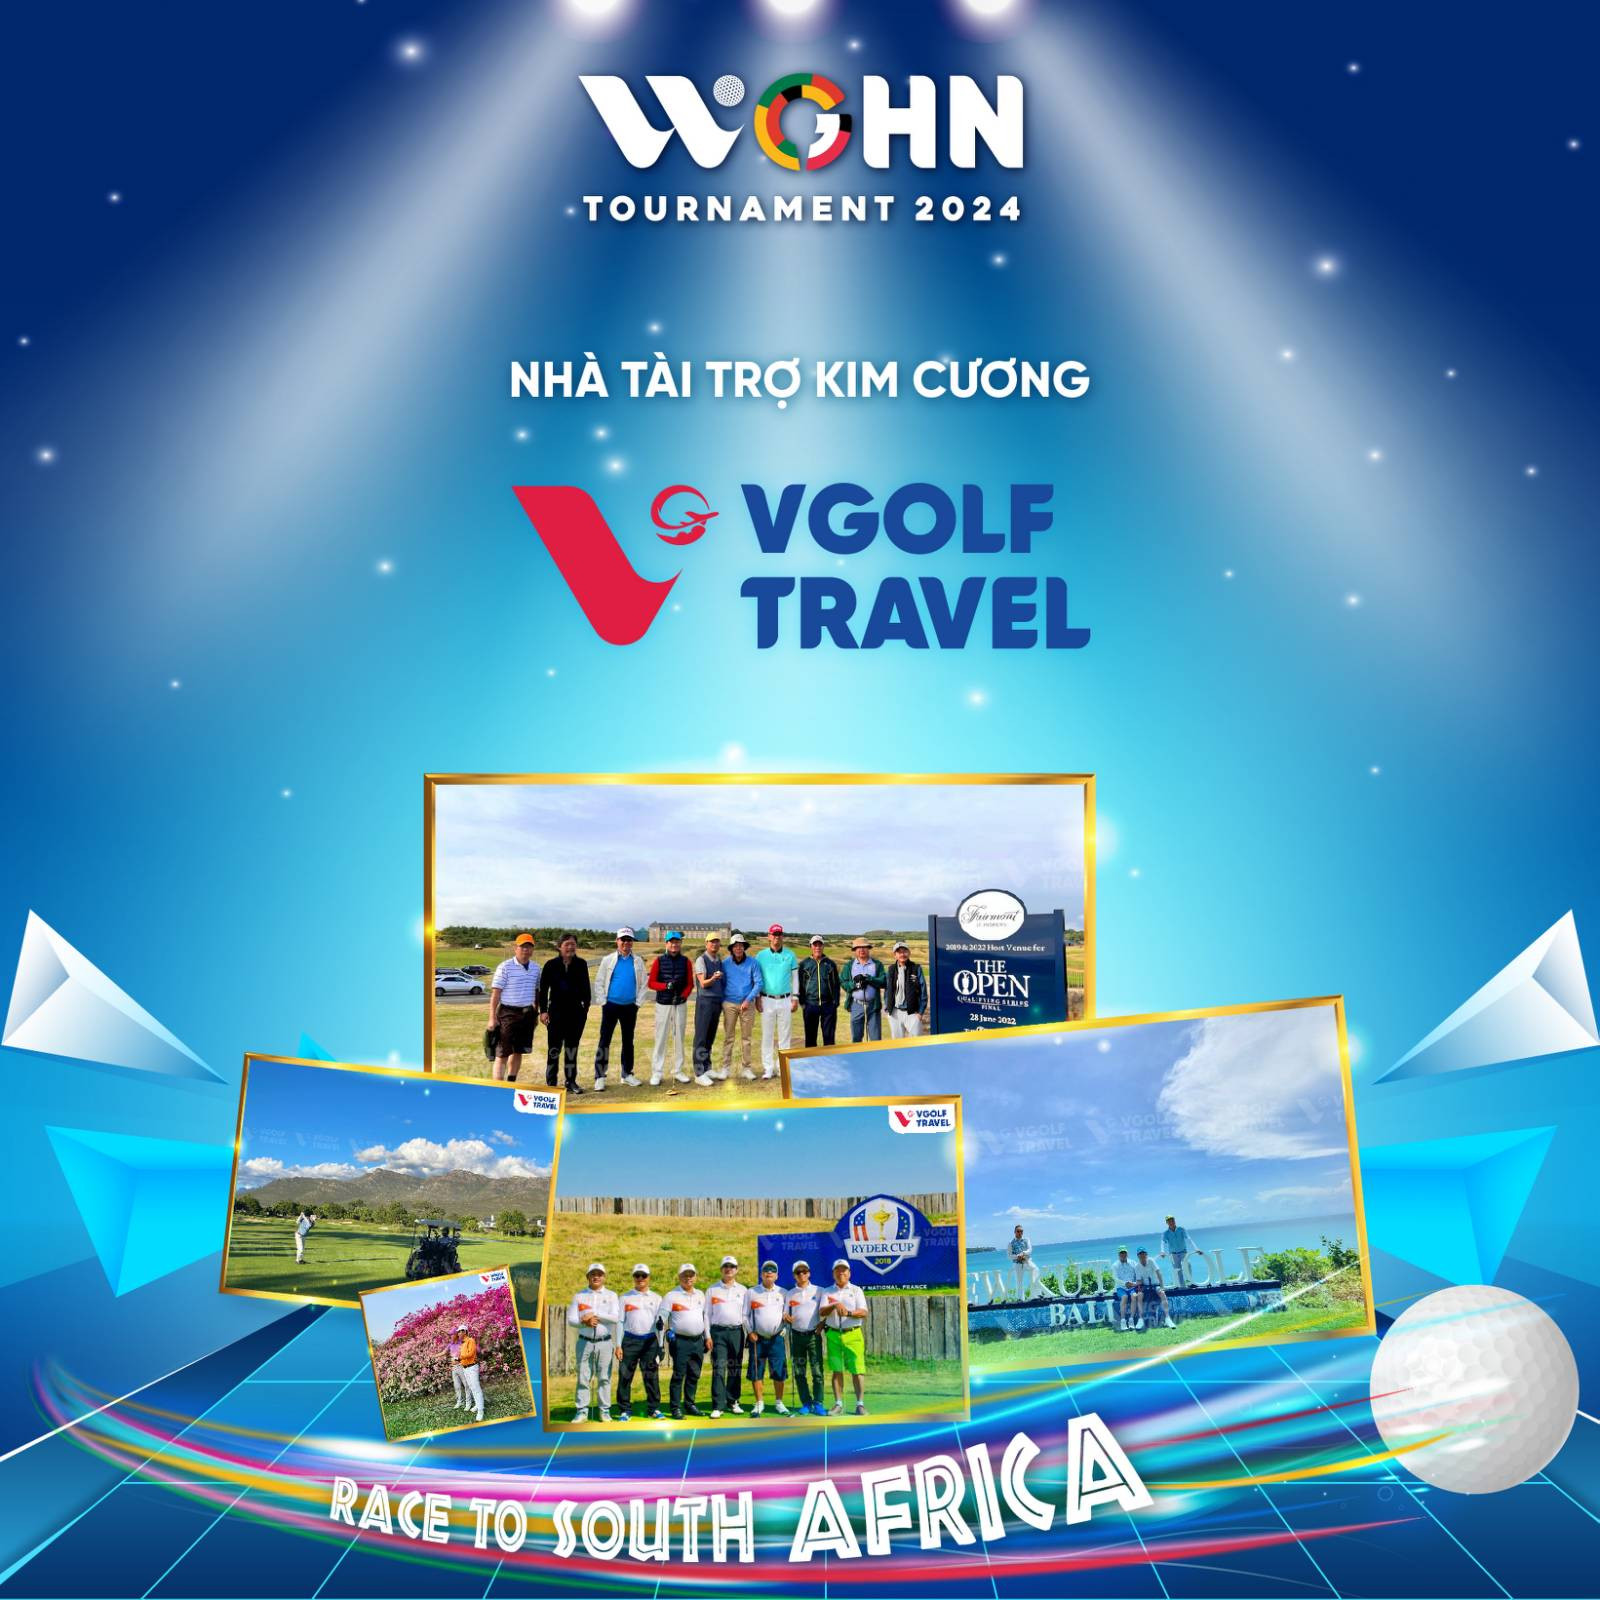  VGolf Travel tự hào là nhà tài trợ Kim cương của WGHN Tournament 2024